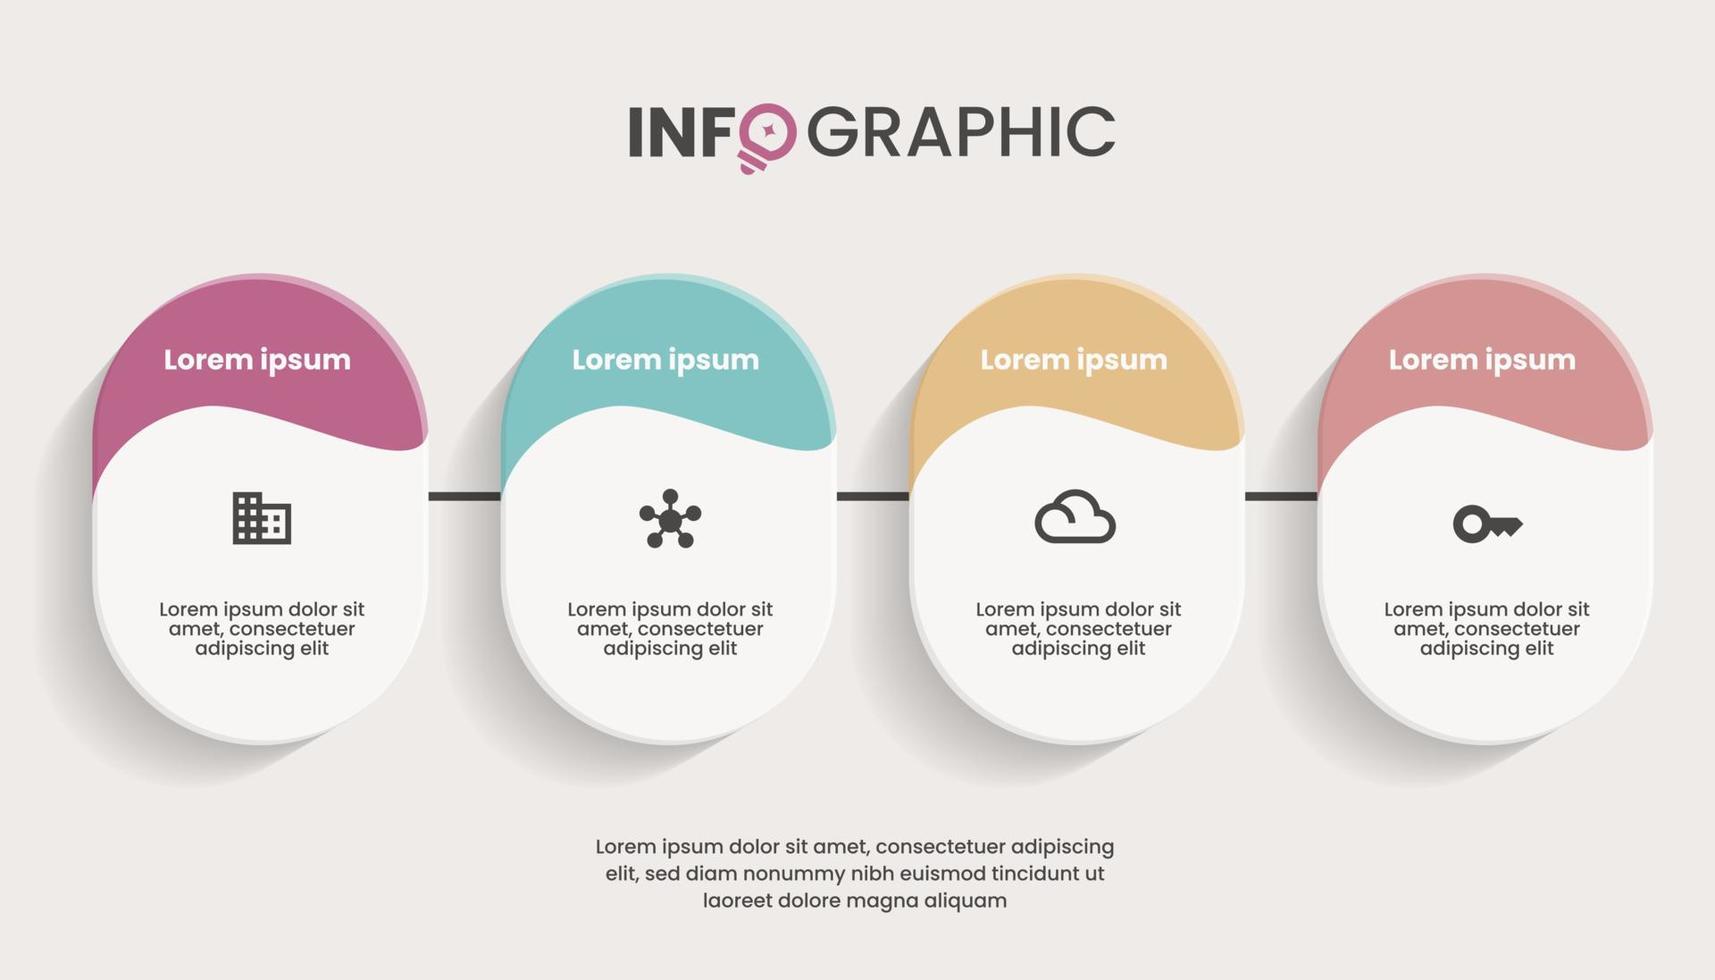 concept créatif pour infographie avec 4 étapes, options, pièces ou processus. visualisation des données d'entreprise vecteur